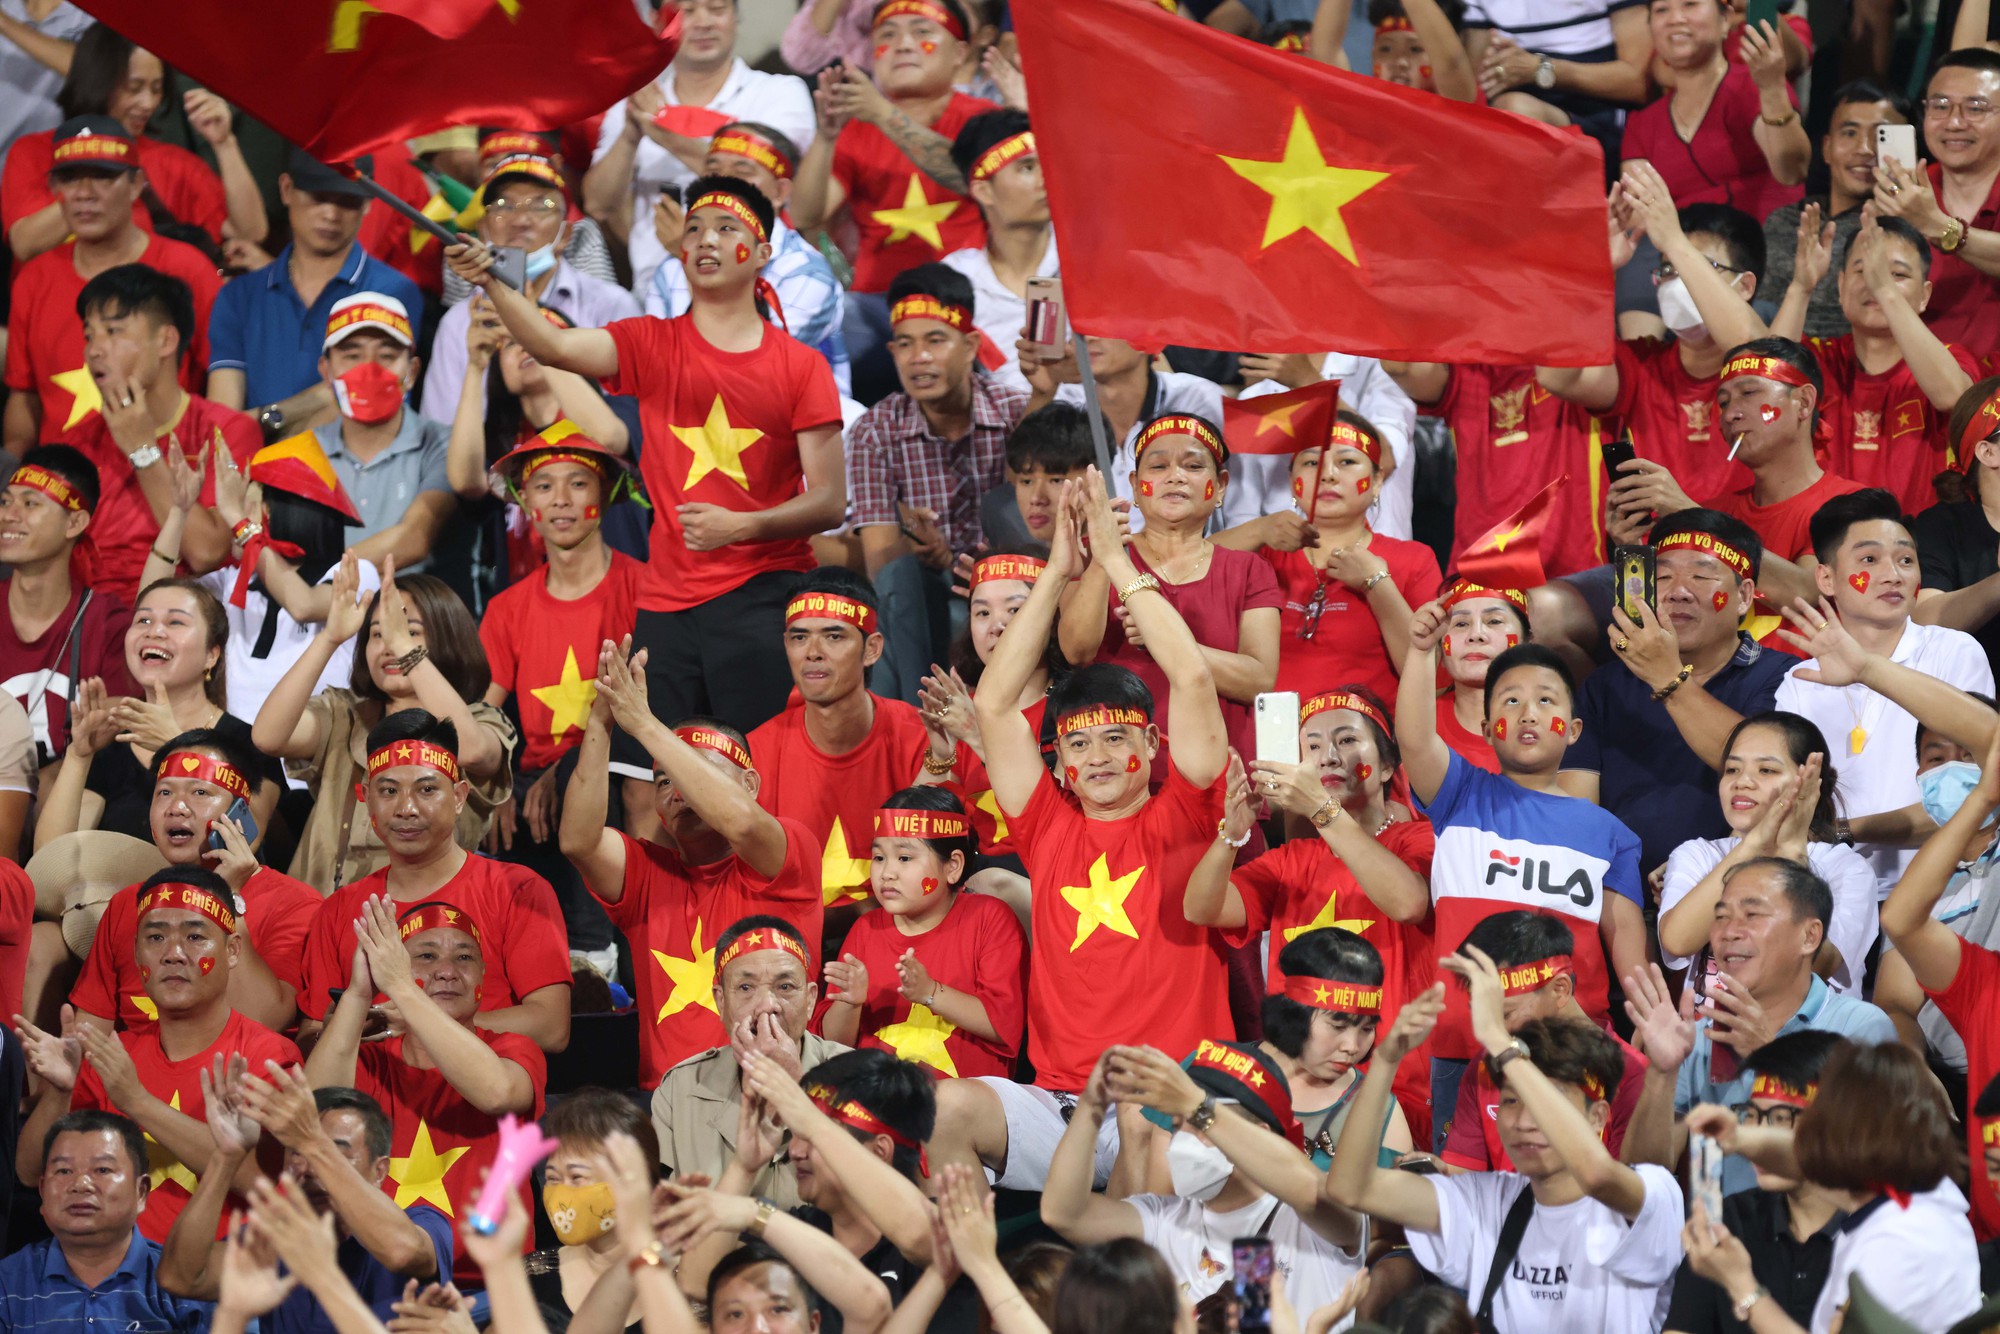 Quảng trường U23 Việt Trì nơi từng diễn ra những trận chung kết đầy kịch tính của giải U23 châu Á. Hãy cùng nhìn lại những khoảnh khắc này với những bức hình đầy cảm xúc.